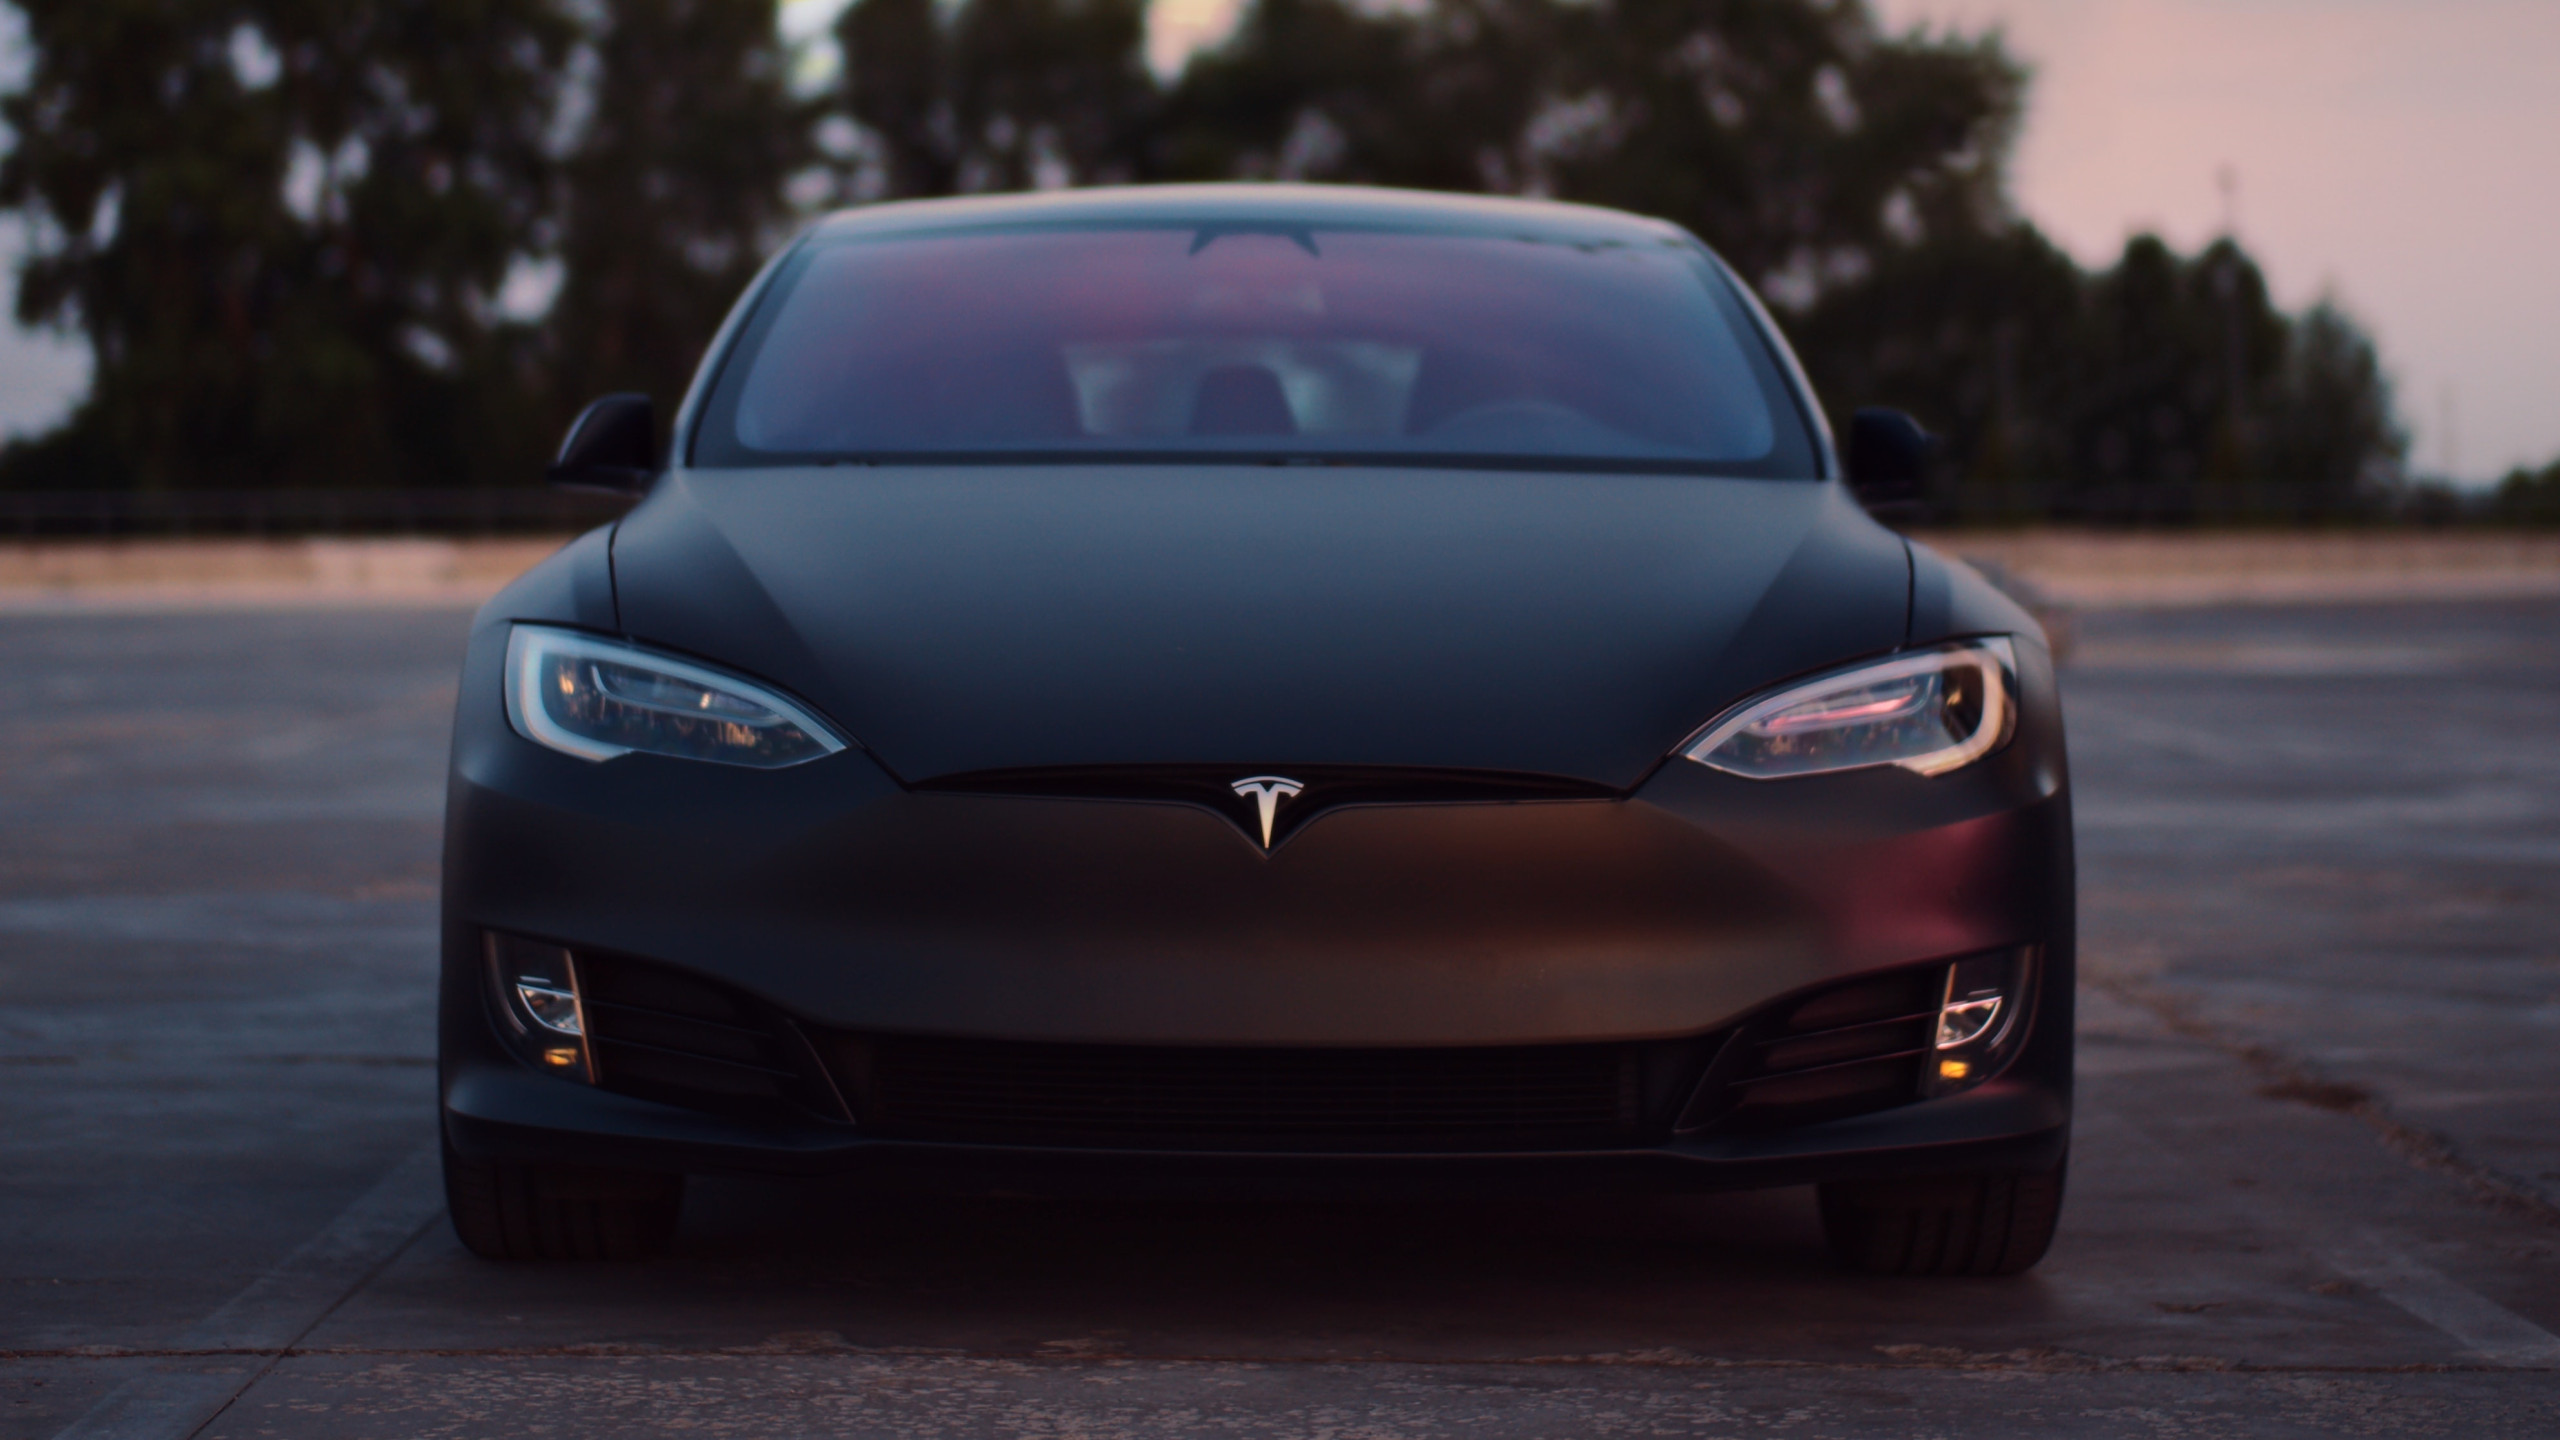 Tesla bateu recorde de vendas no último trimestre; quem falou em crise? - Imagem: Dmitry Novikov on Unsplash